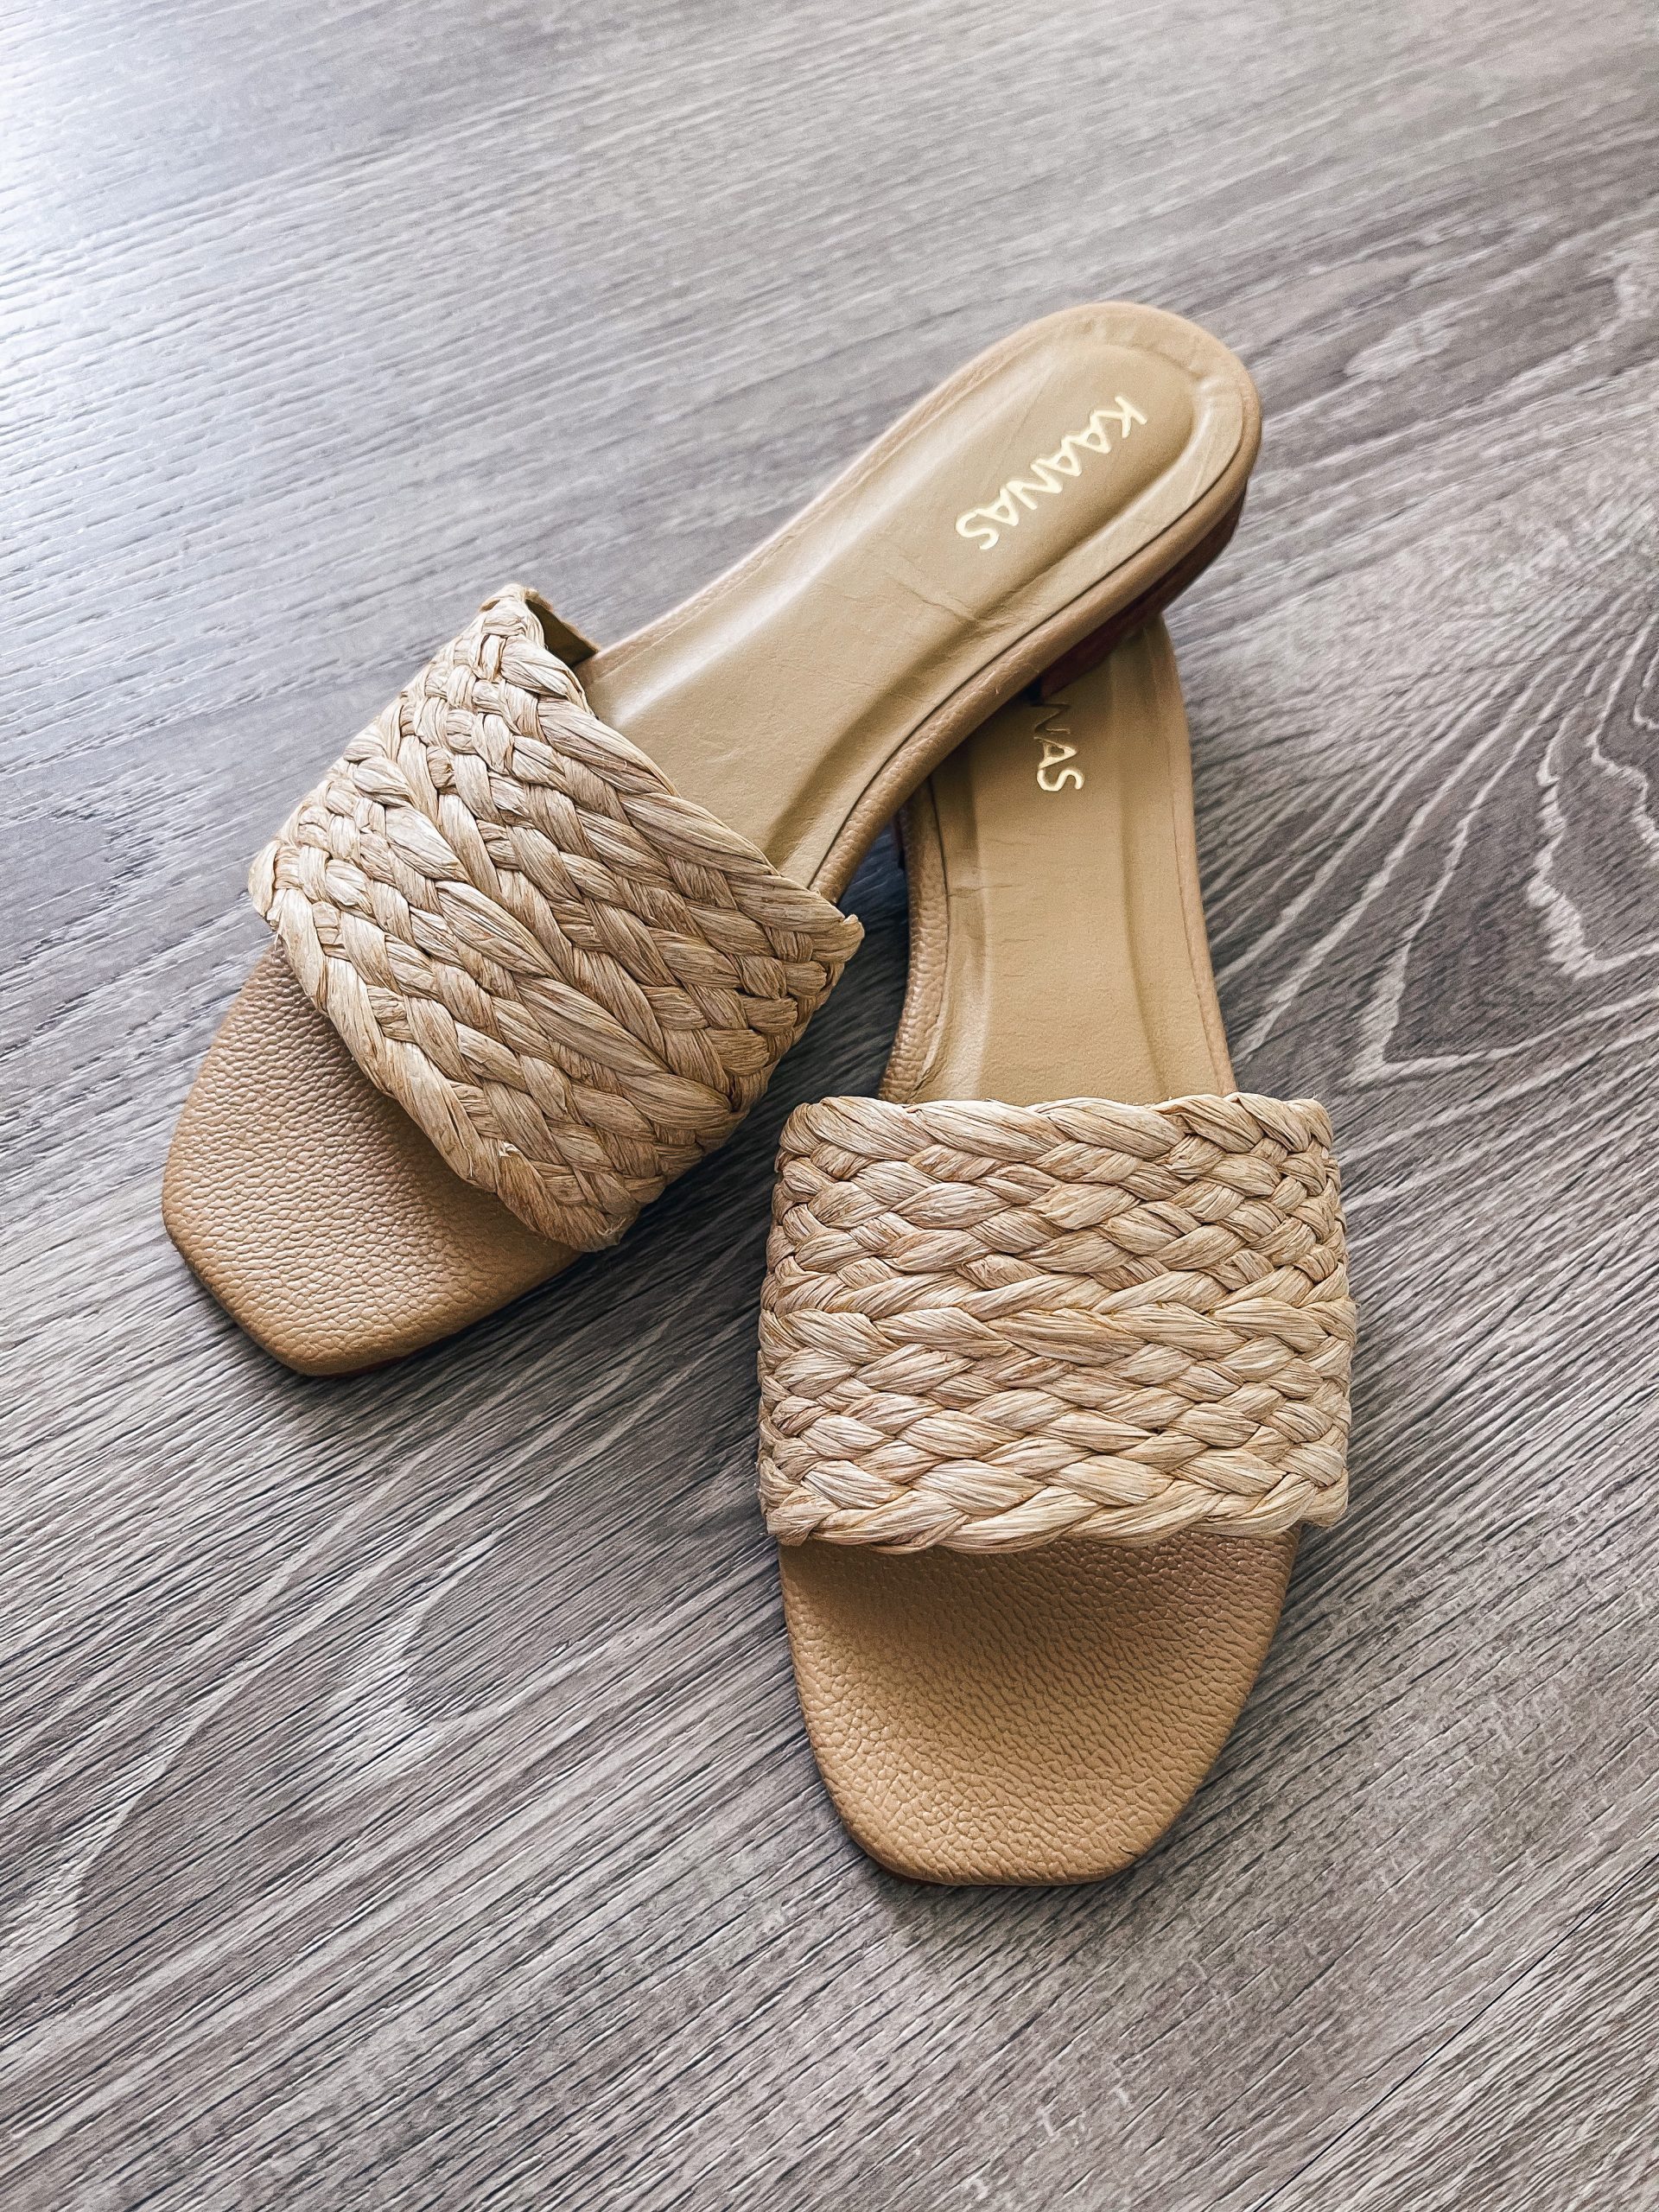 Trending for Summer 2021: Slide Sandals - Meagan's Moda